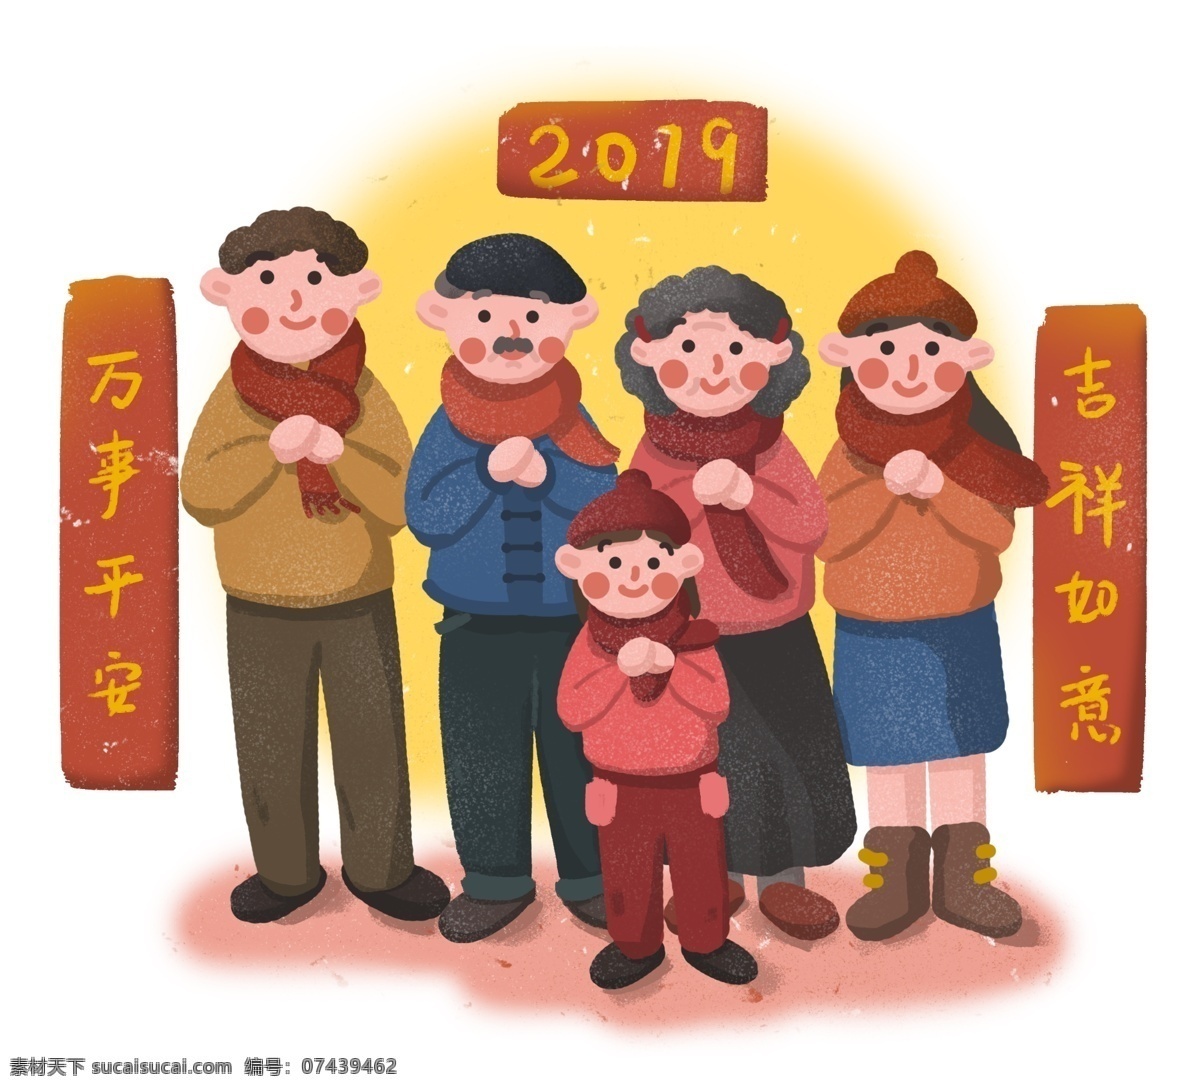 新年 2019 年 猪年 全家人 一起 拜年 2019年 新春 春节 节日 过年 大家庭 家人 恭贺新年 团聚 团圆 全家福 一家人